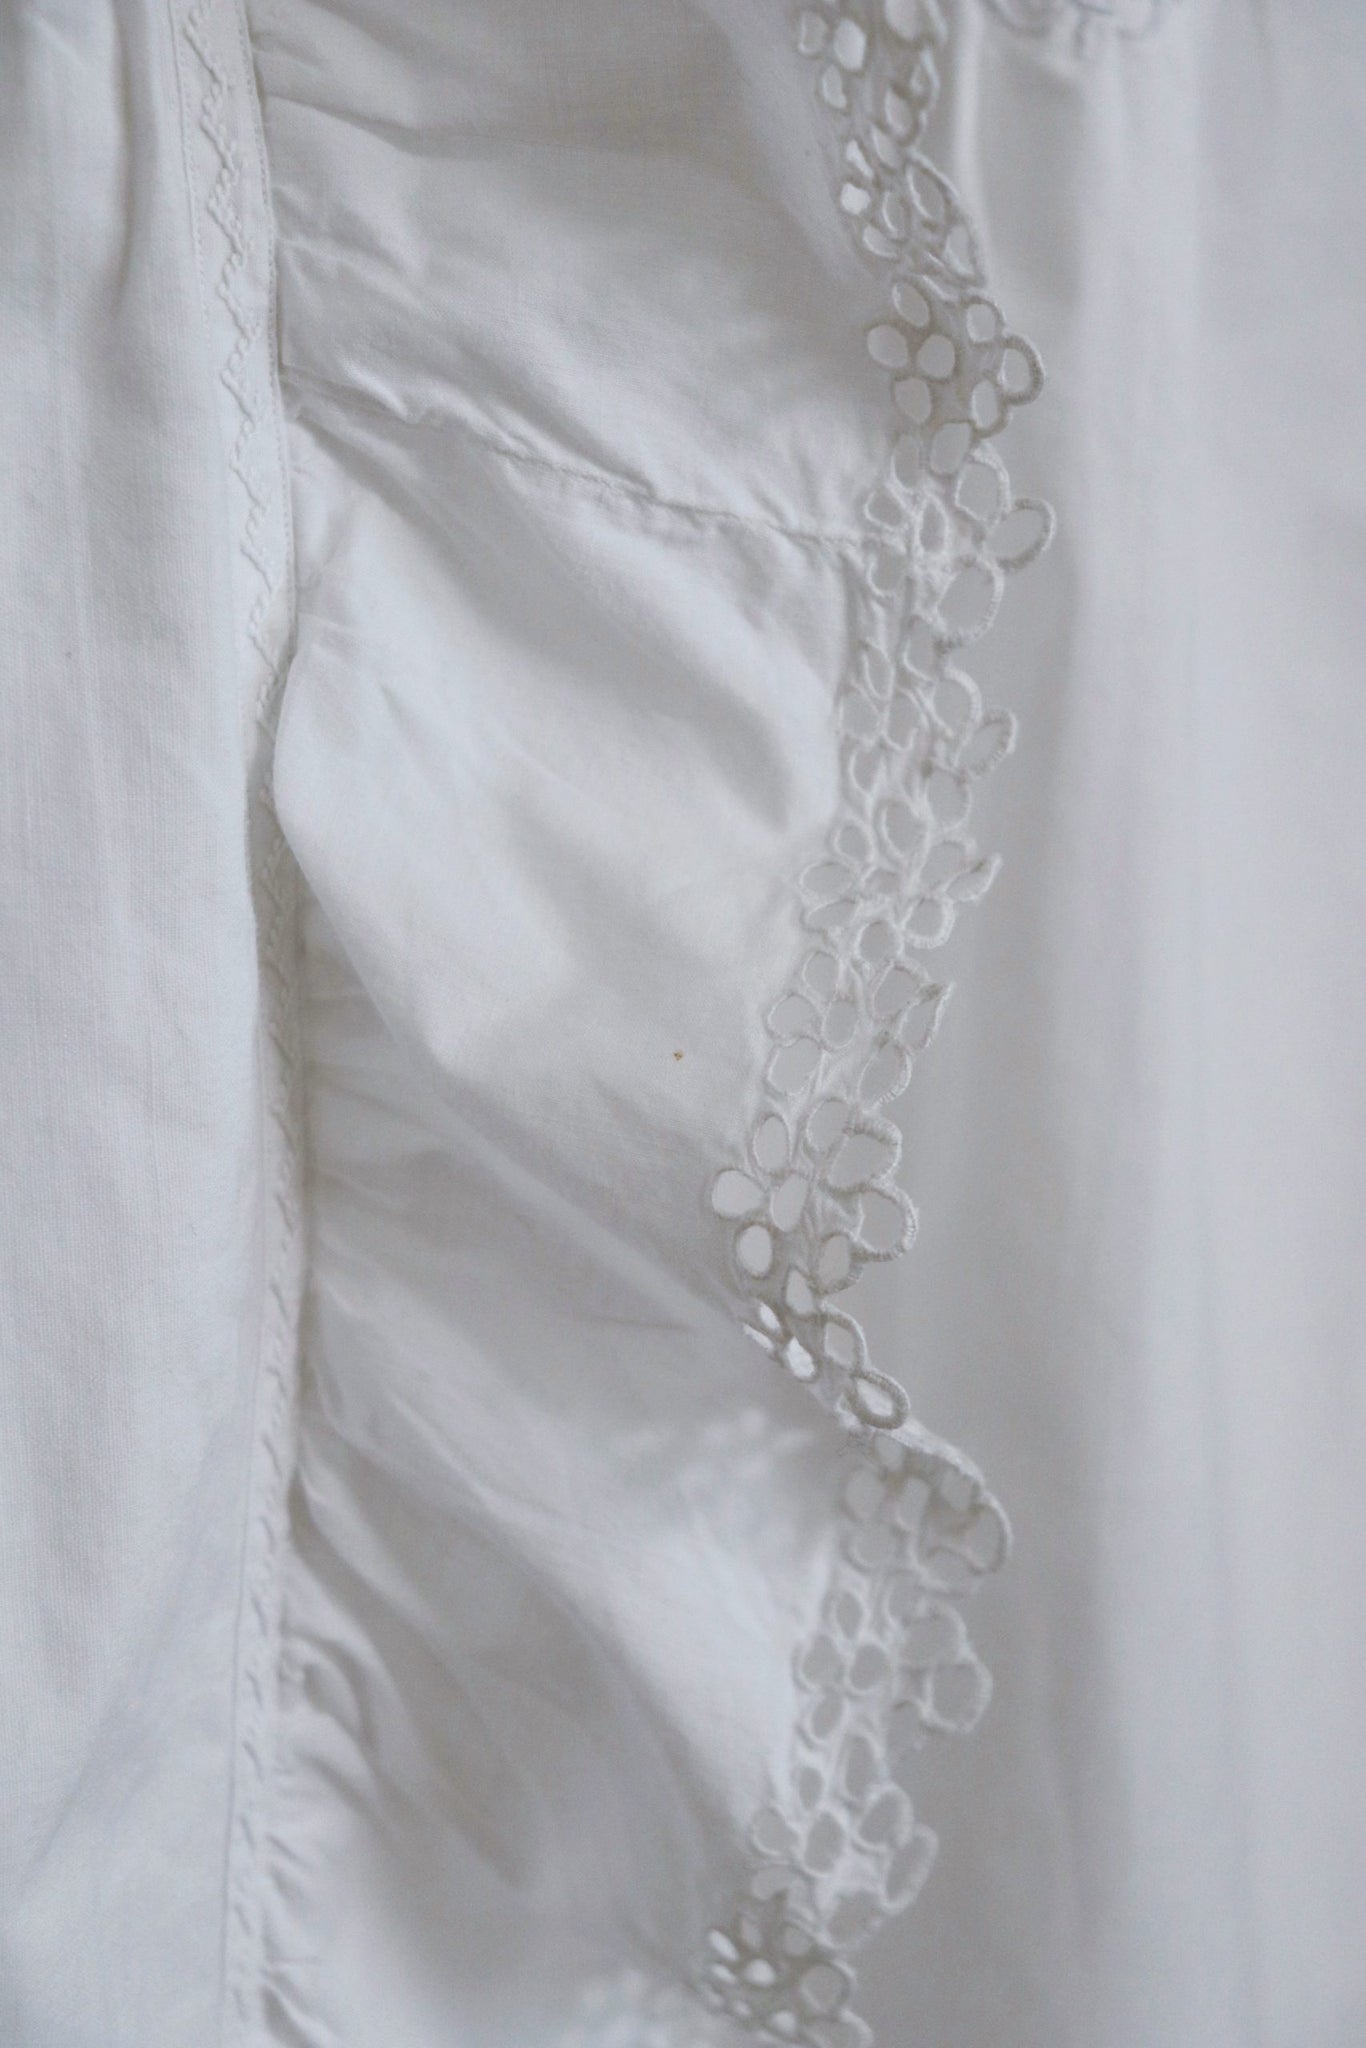 1910s Antique Cotton Blouse White